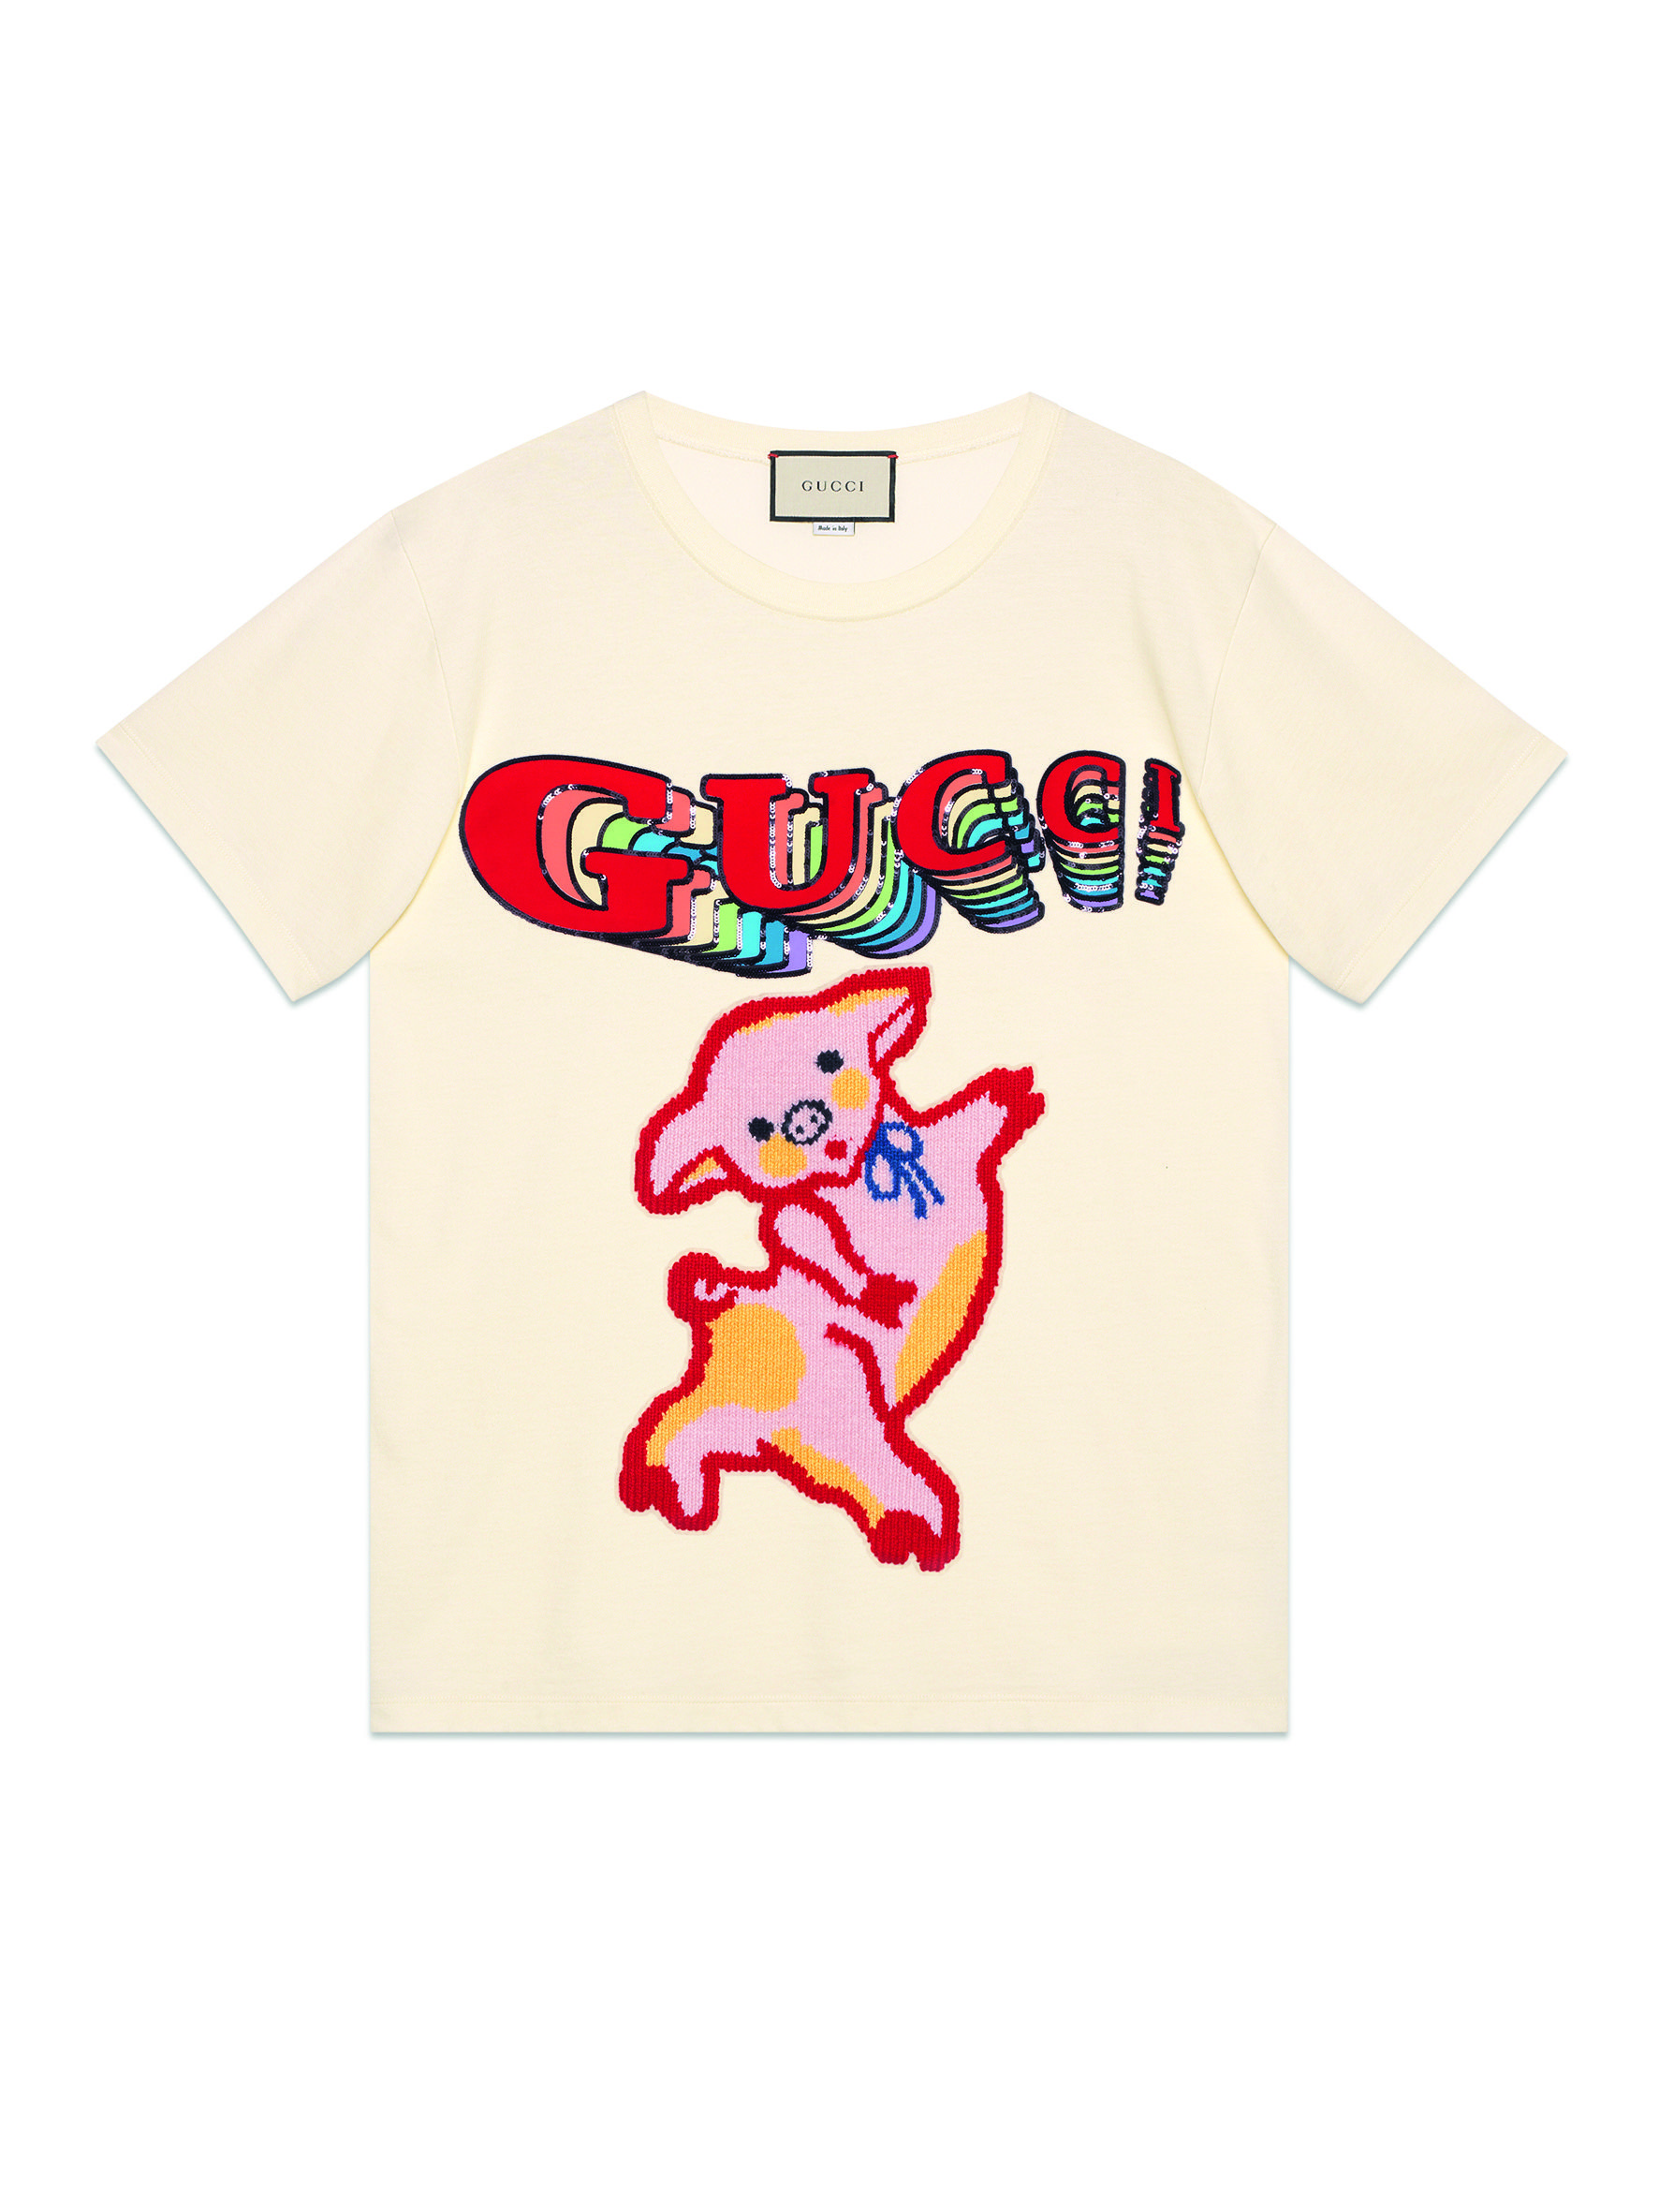 gucci 3 little pigs shirt